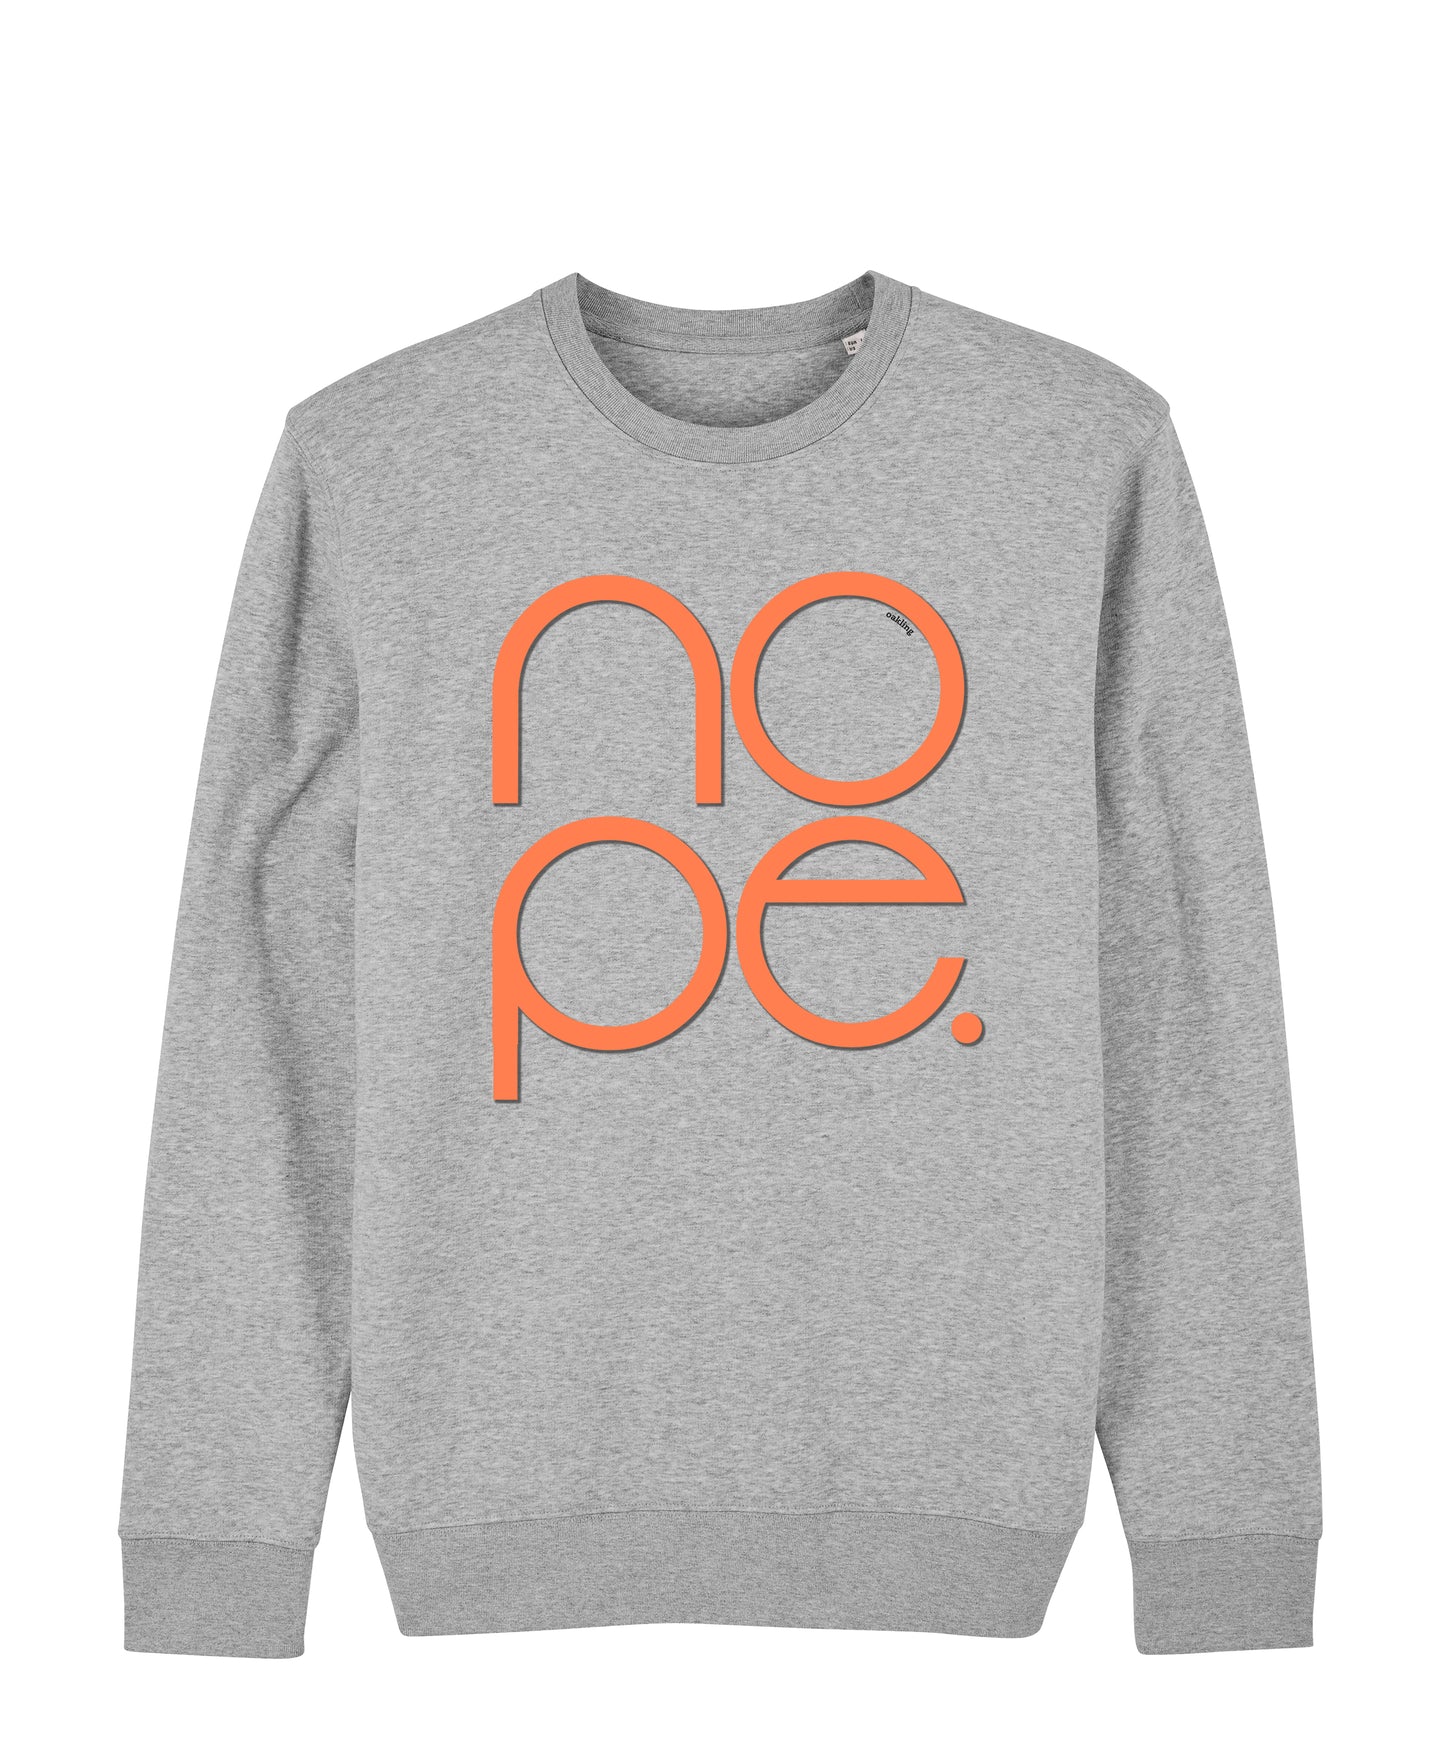 Organic Sweatshirt - The Nope